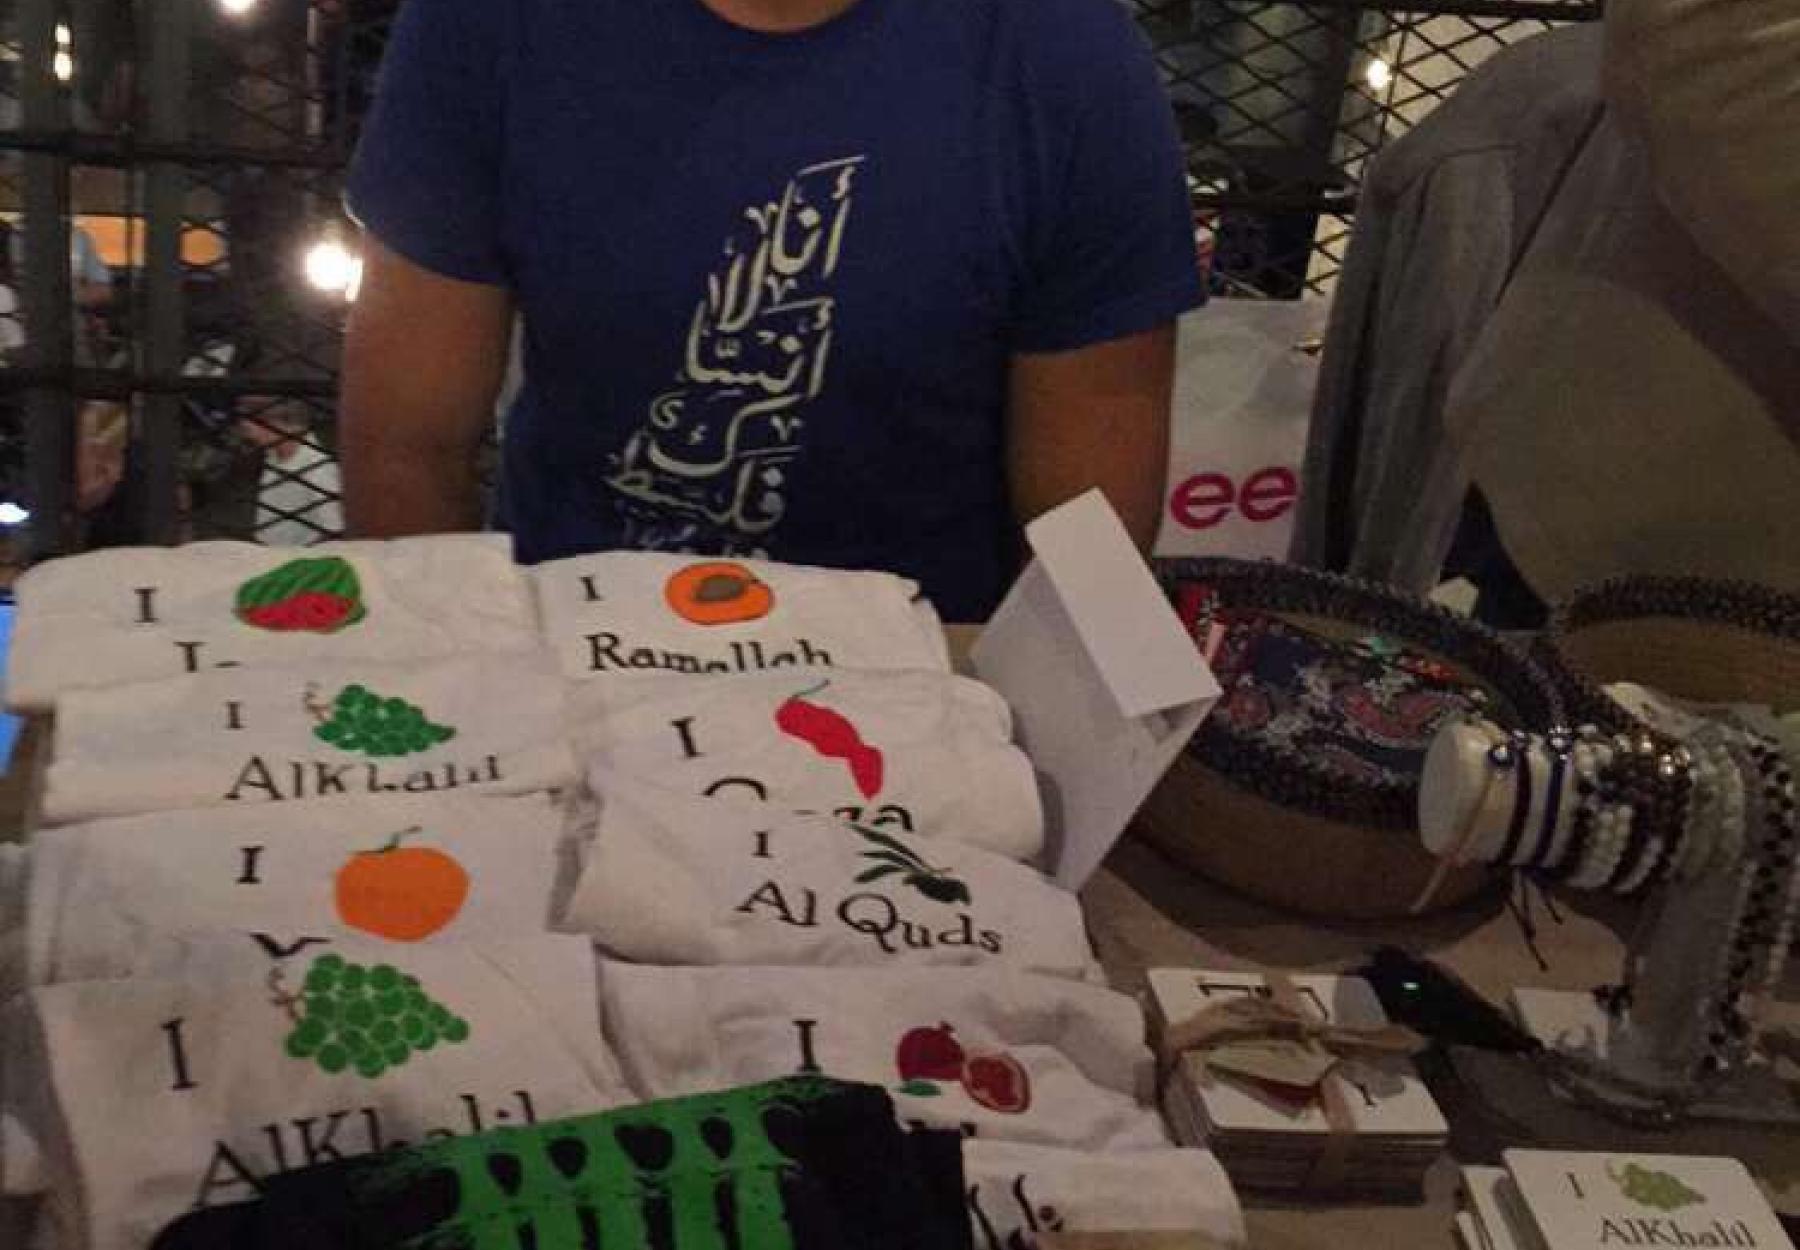 العربية في فعالية "تسوق كل المساء" في دبي